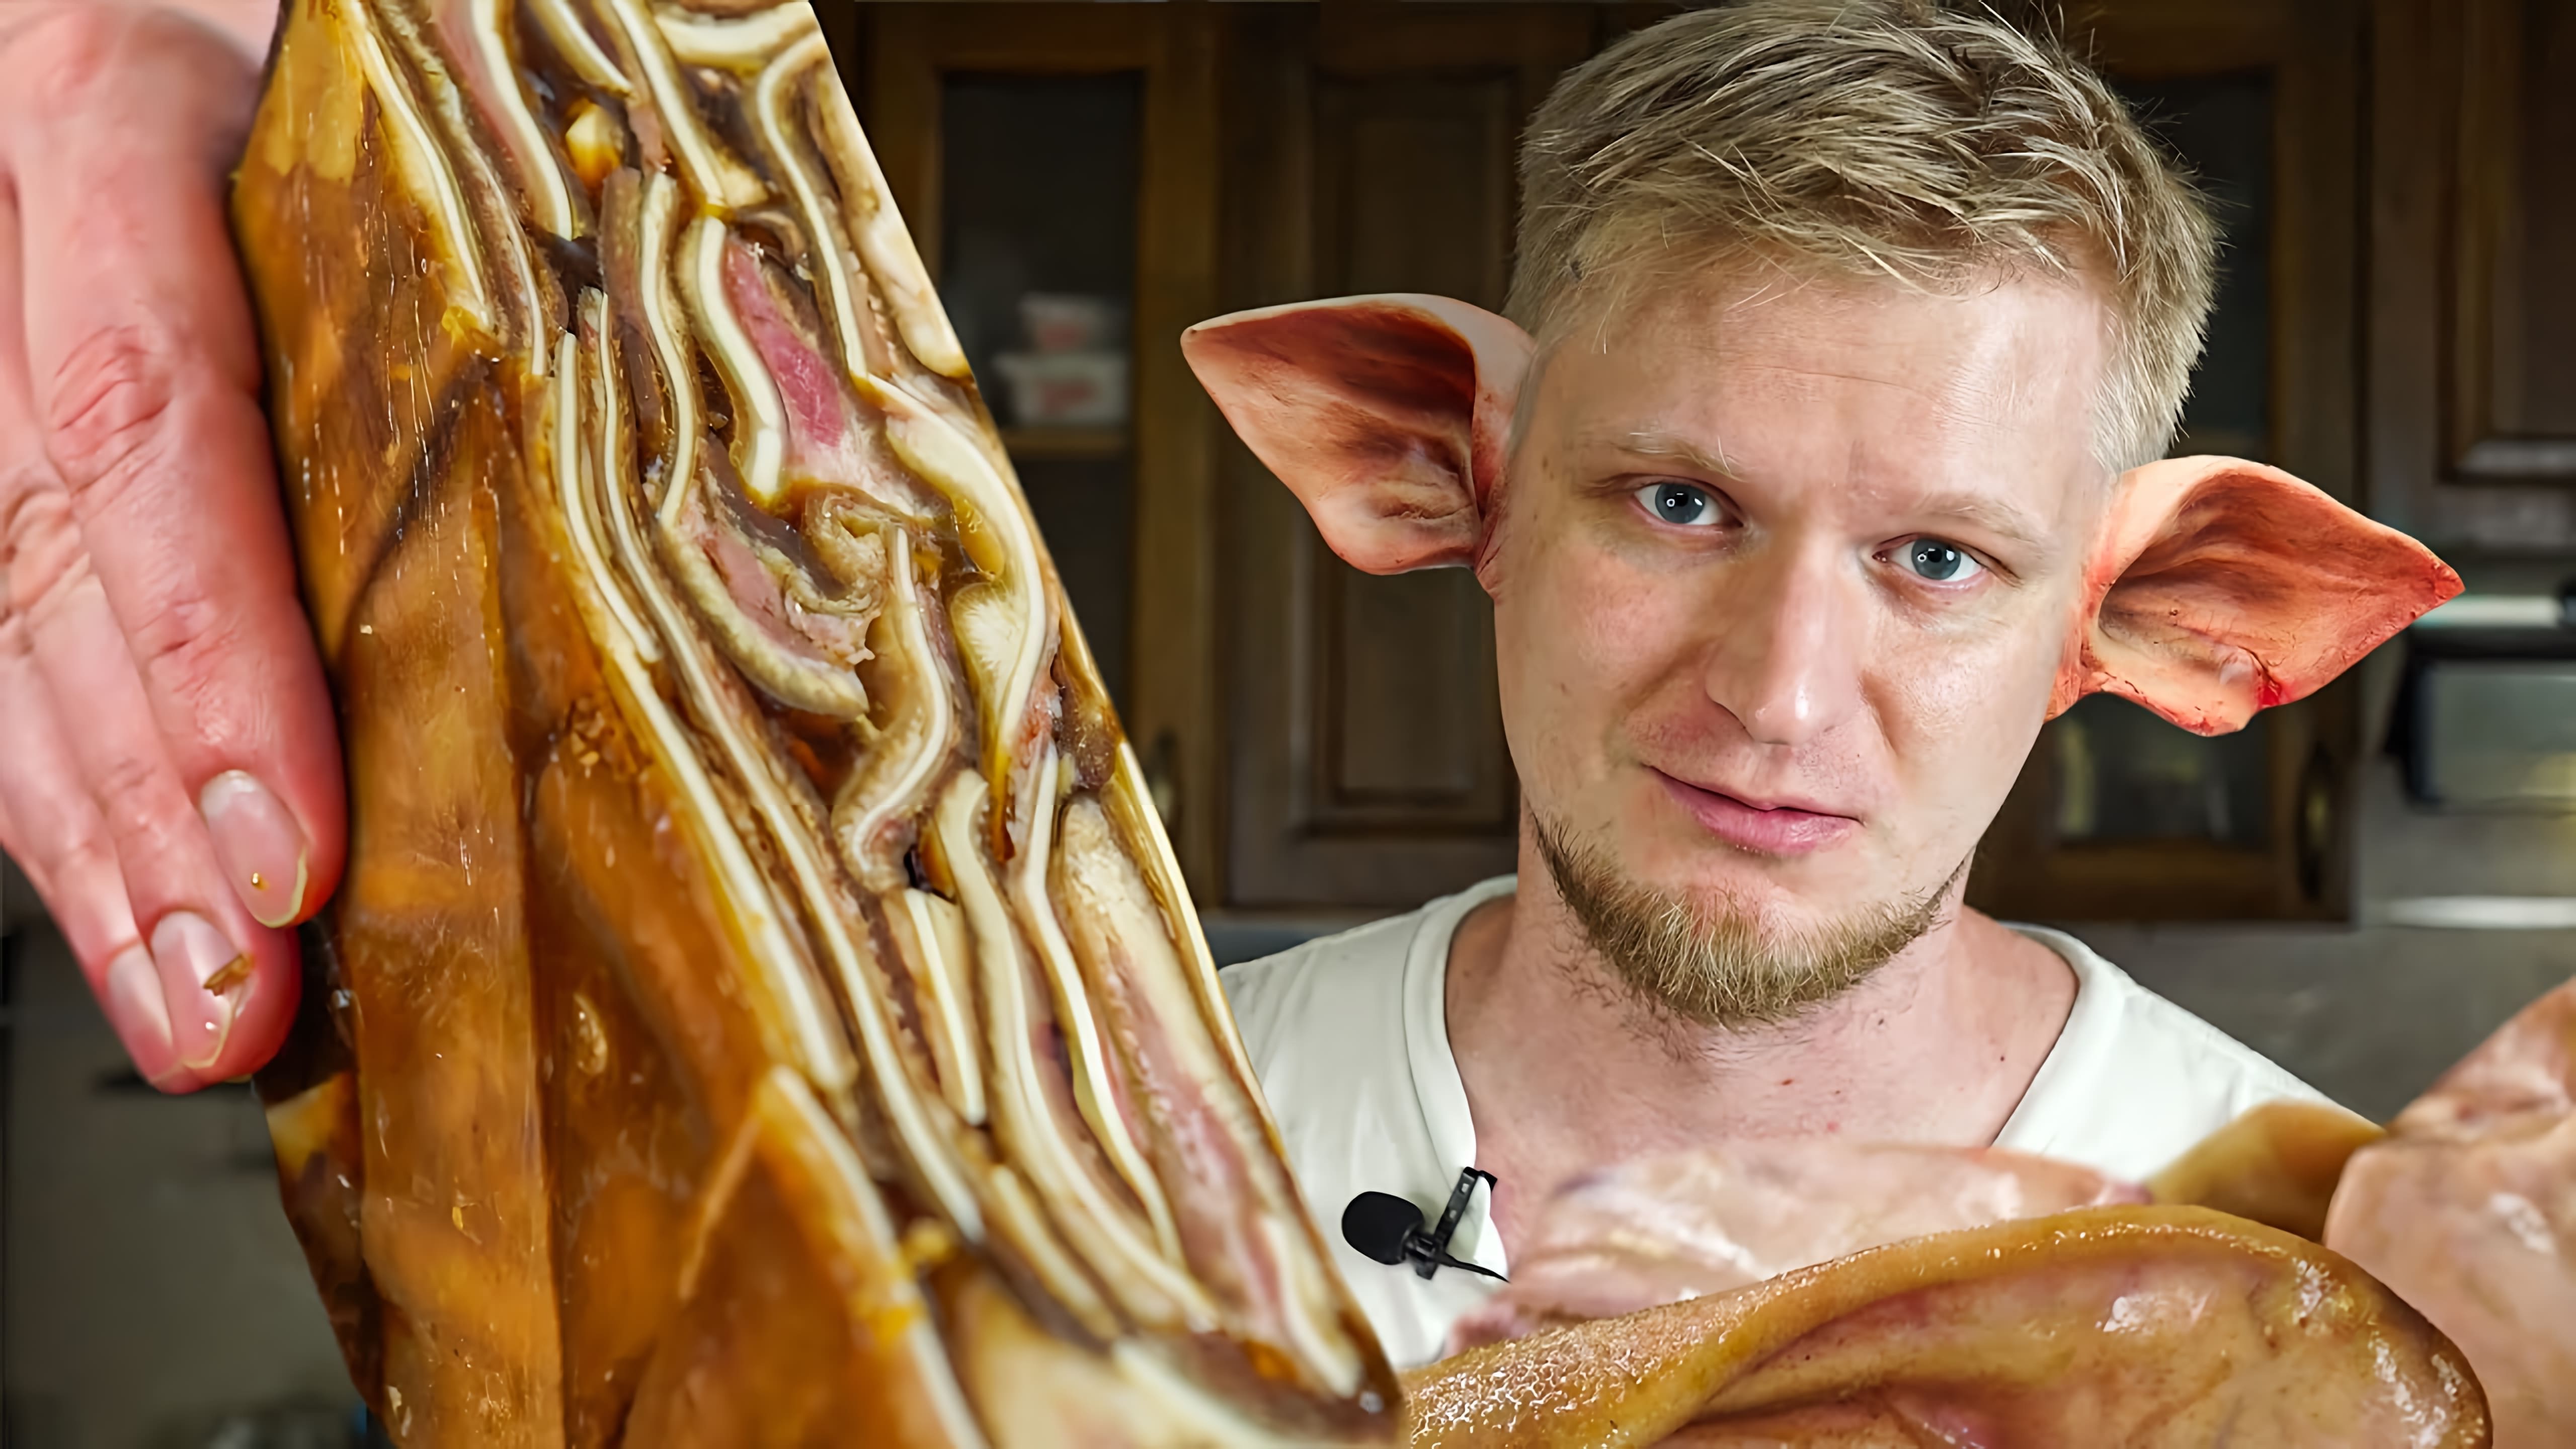 В данном видео демонстрируется процесс приготовления свиных ушей